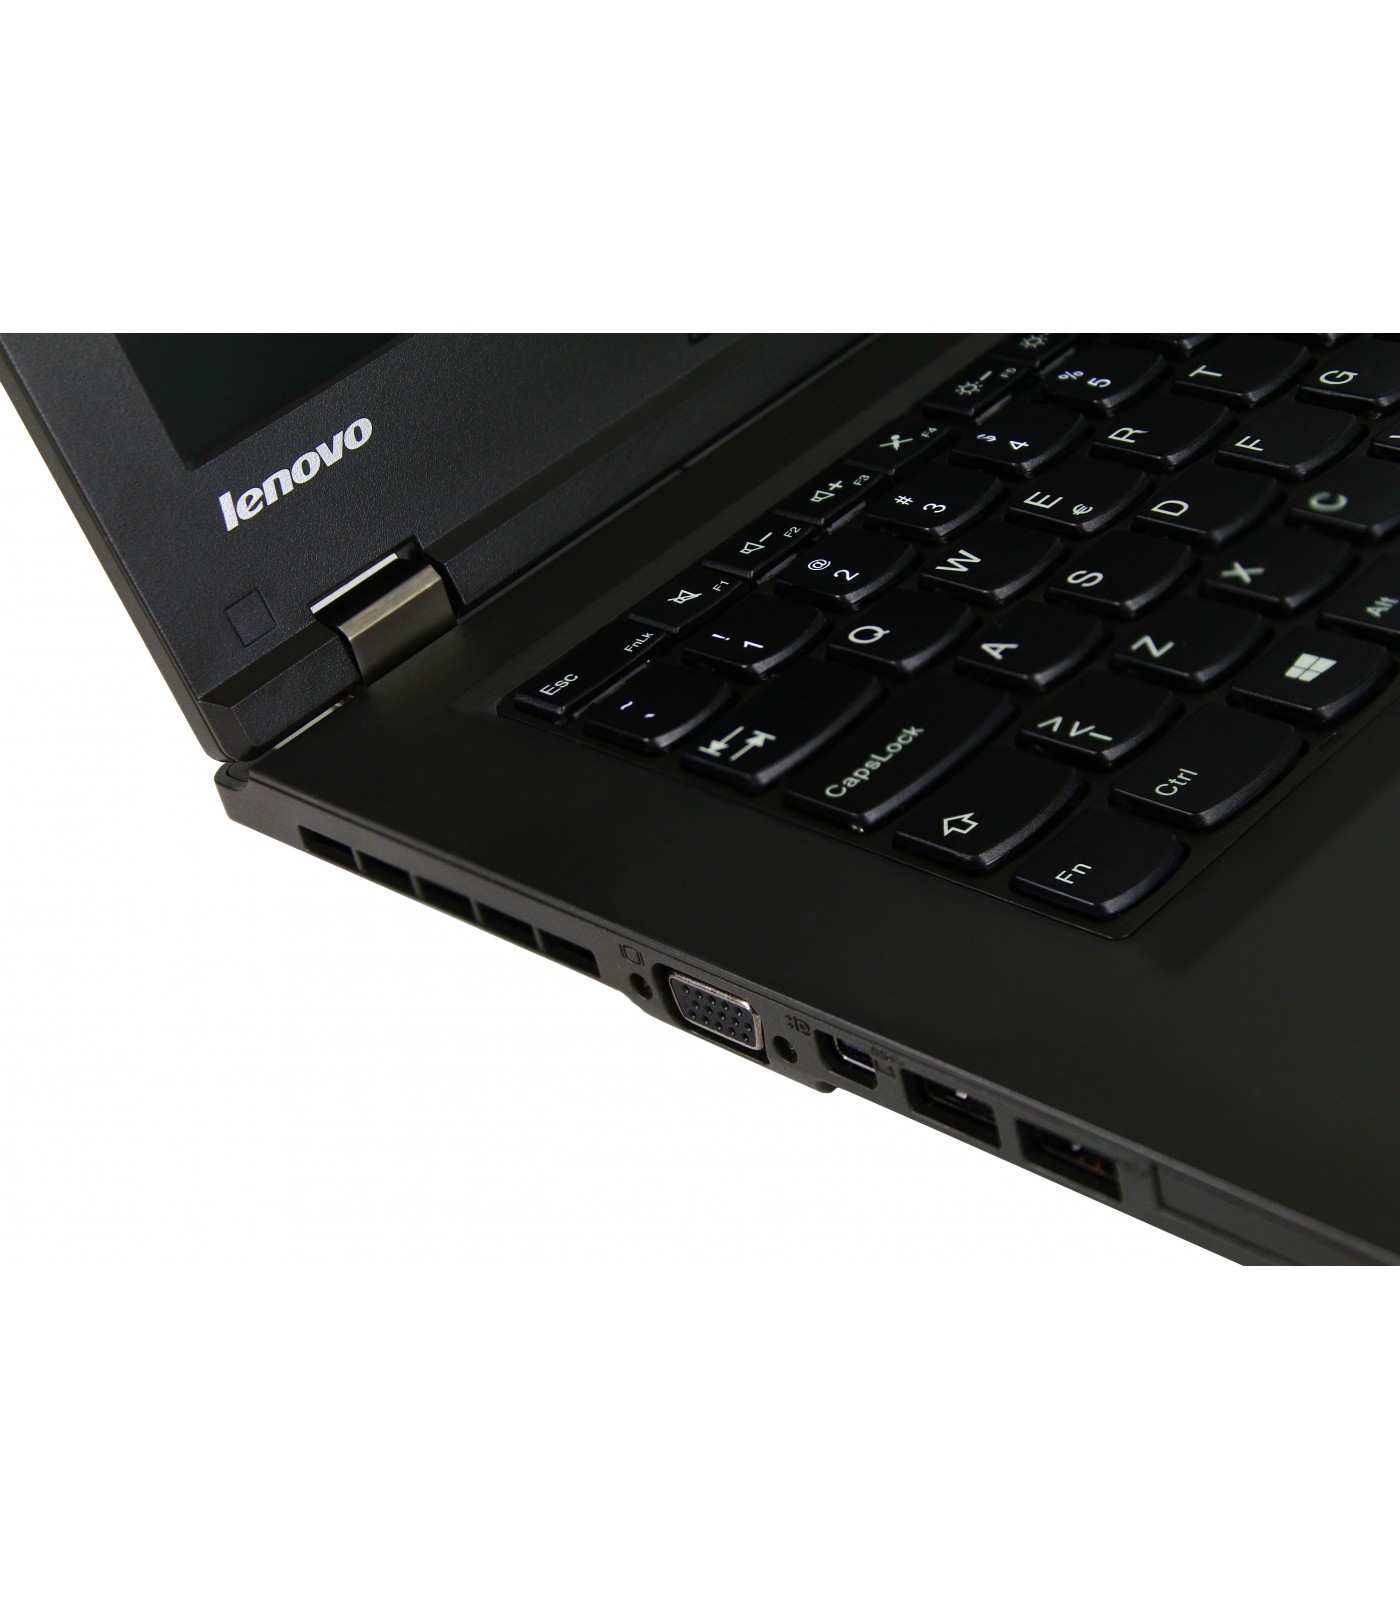 Poleasingowy laptop Lenovo ThinkPad L440 z Intel Core i5-4210M w klasie B.